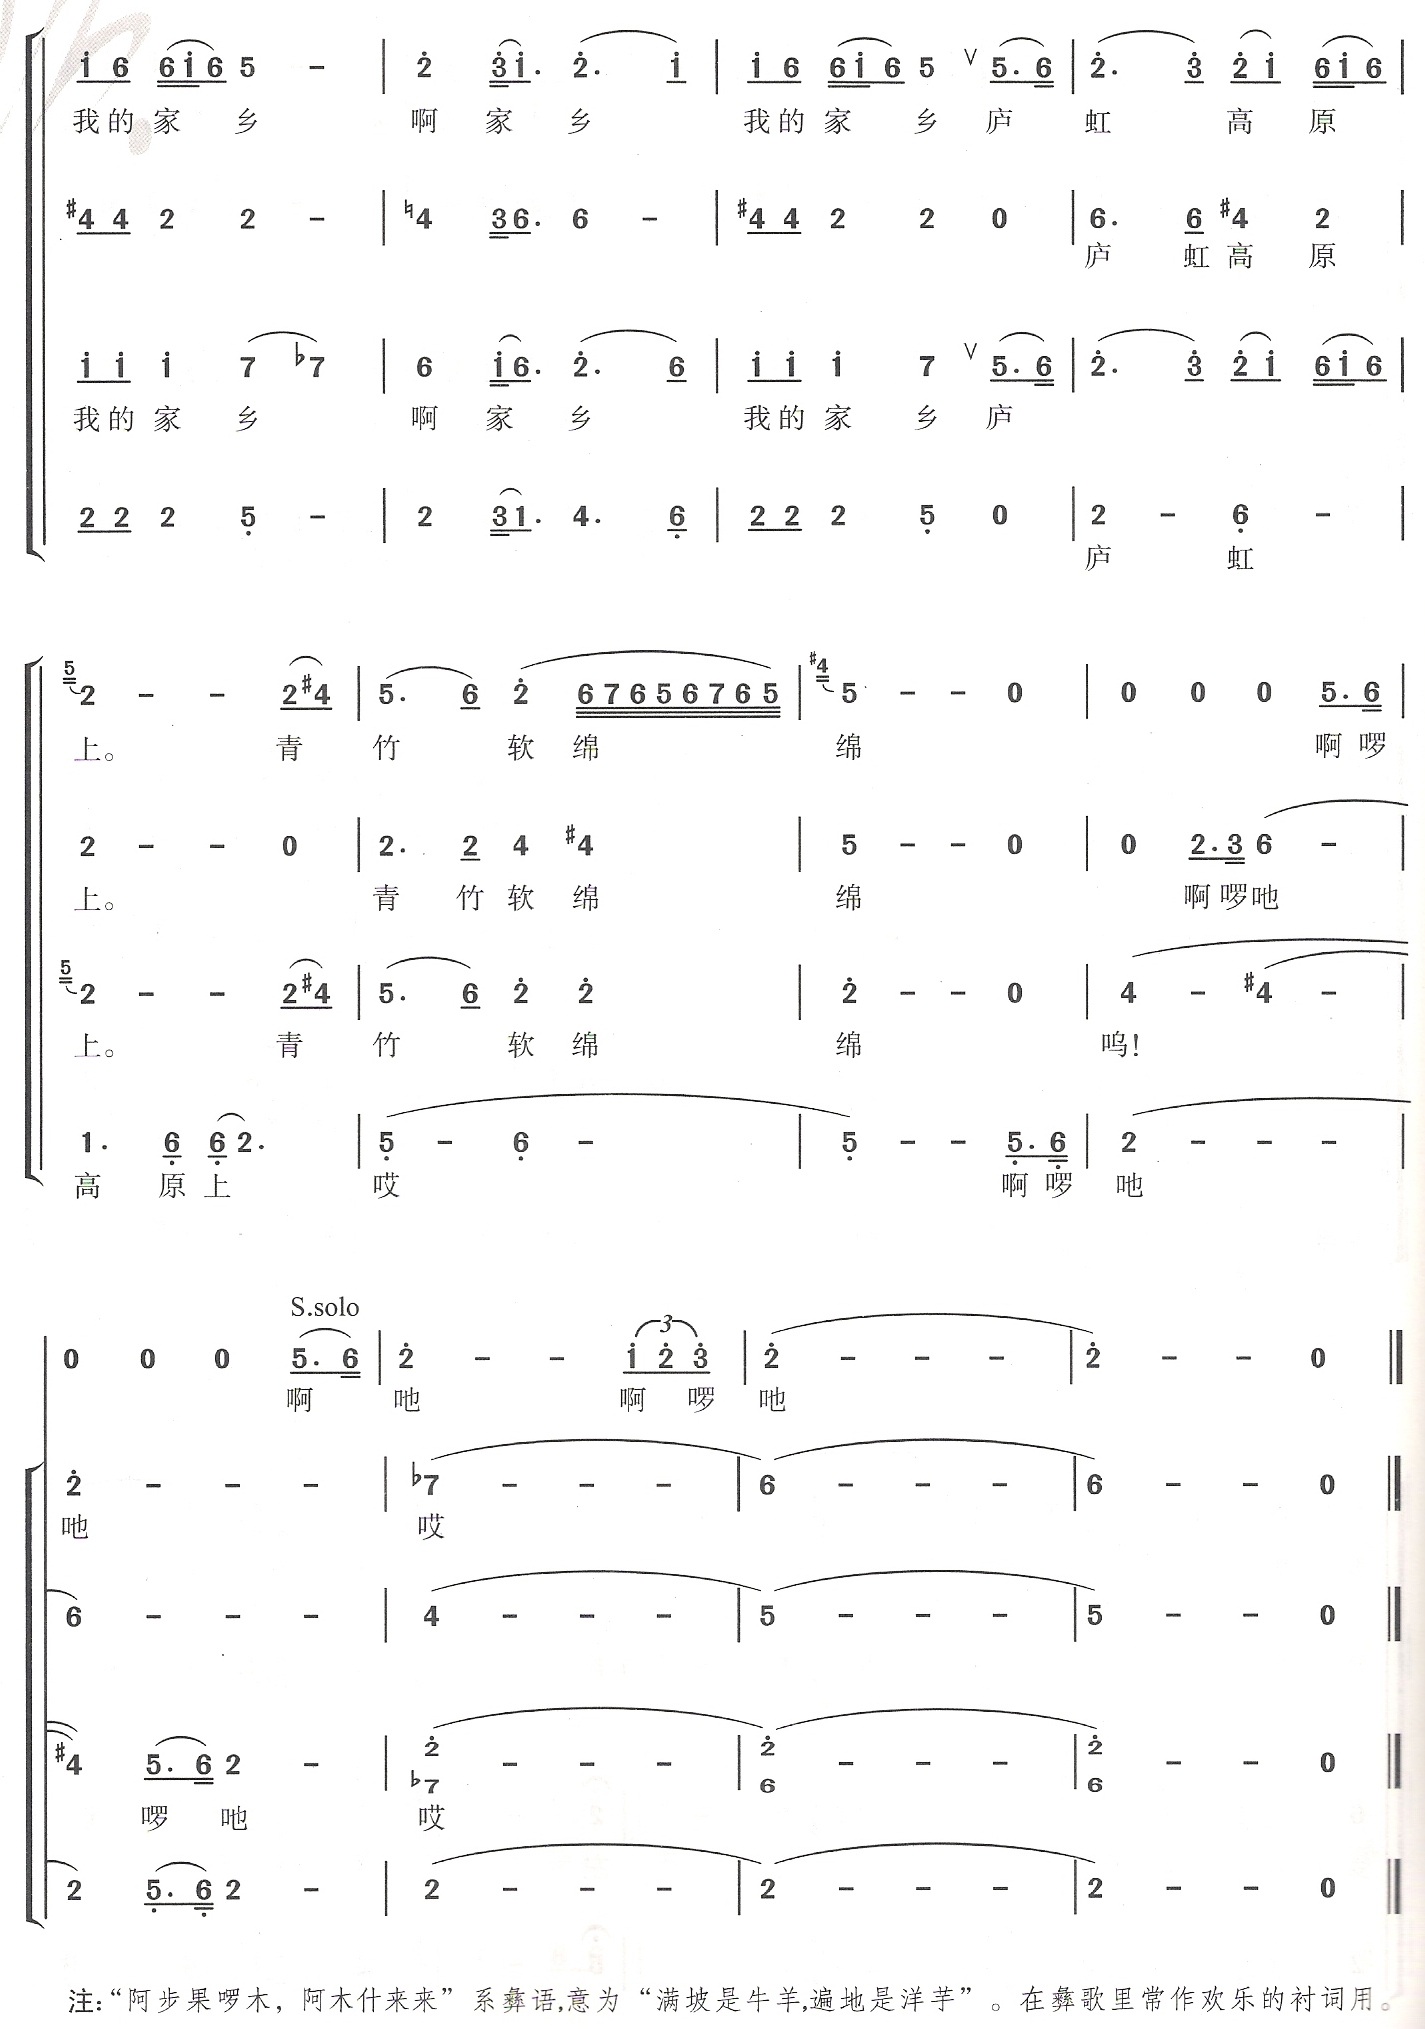 家乡第五页（合唱）合唱曲谱（图1）